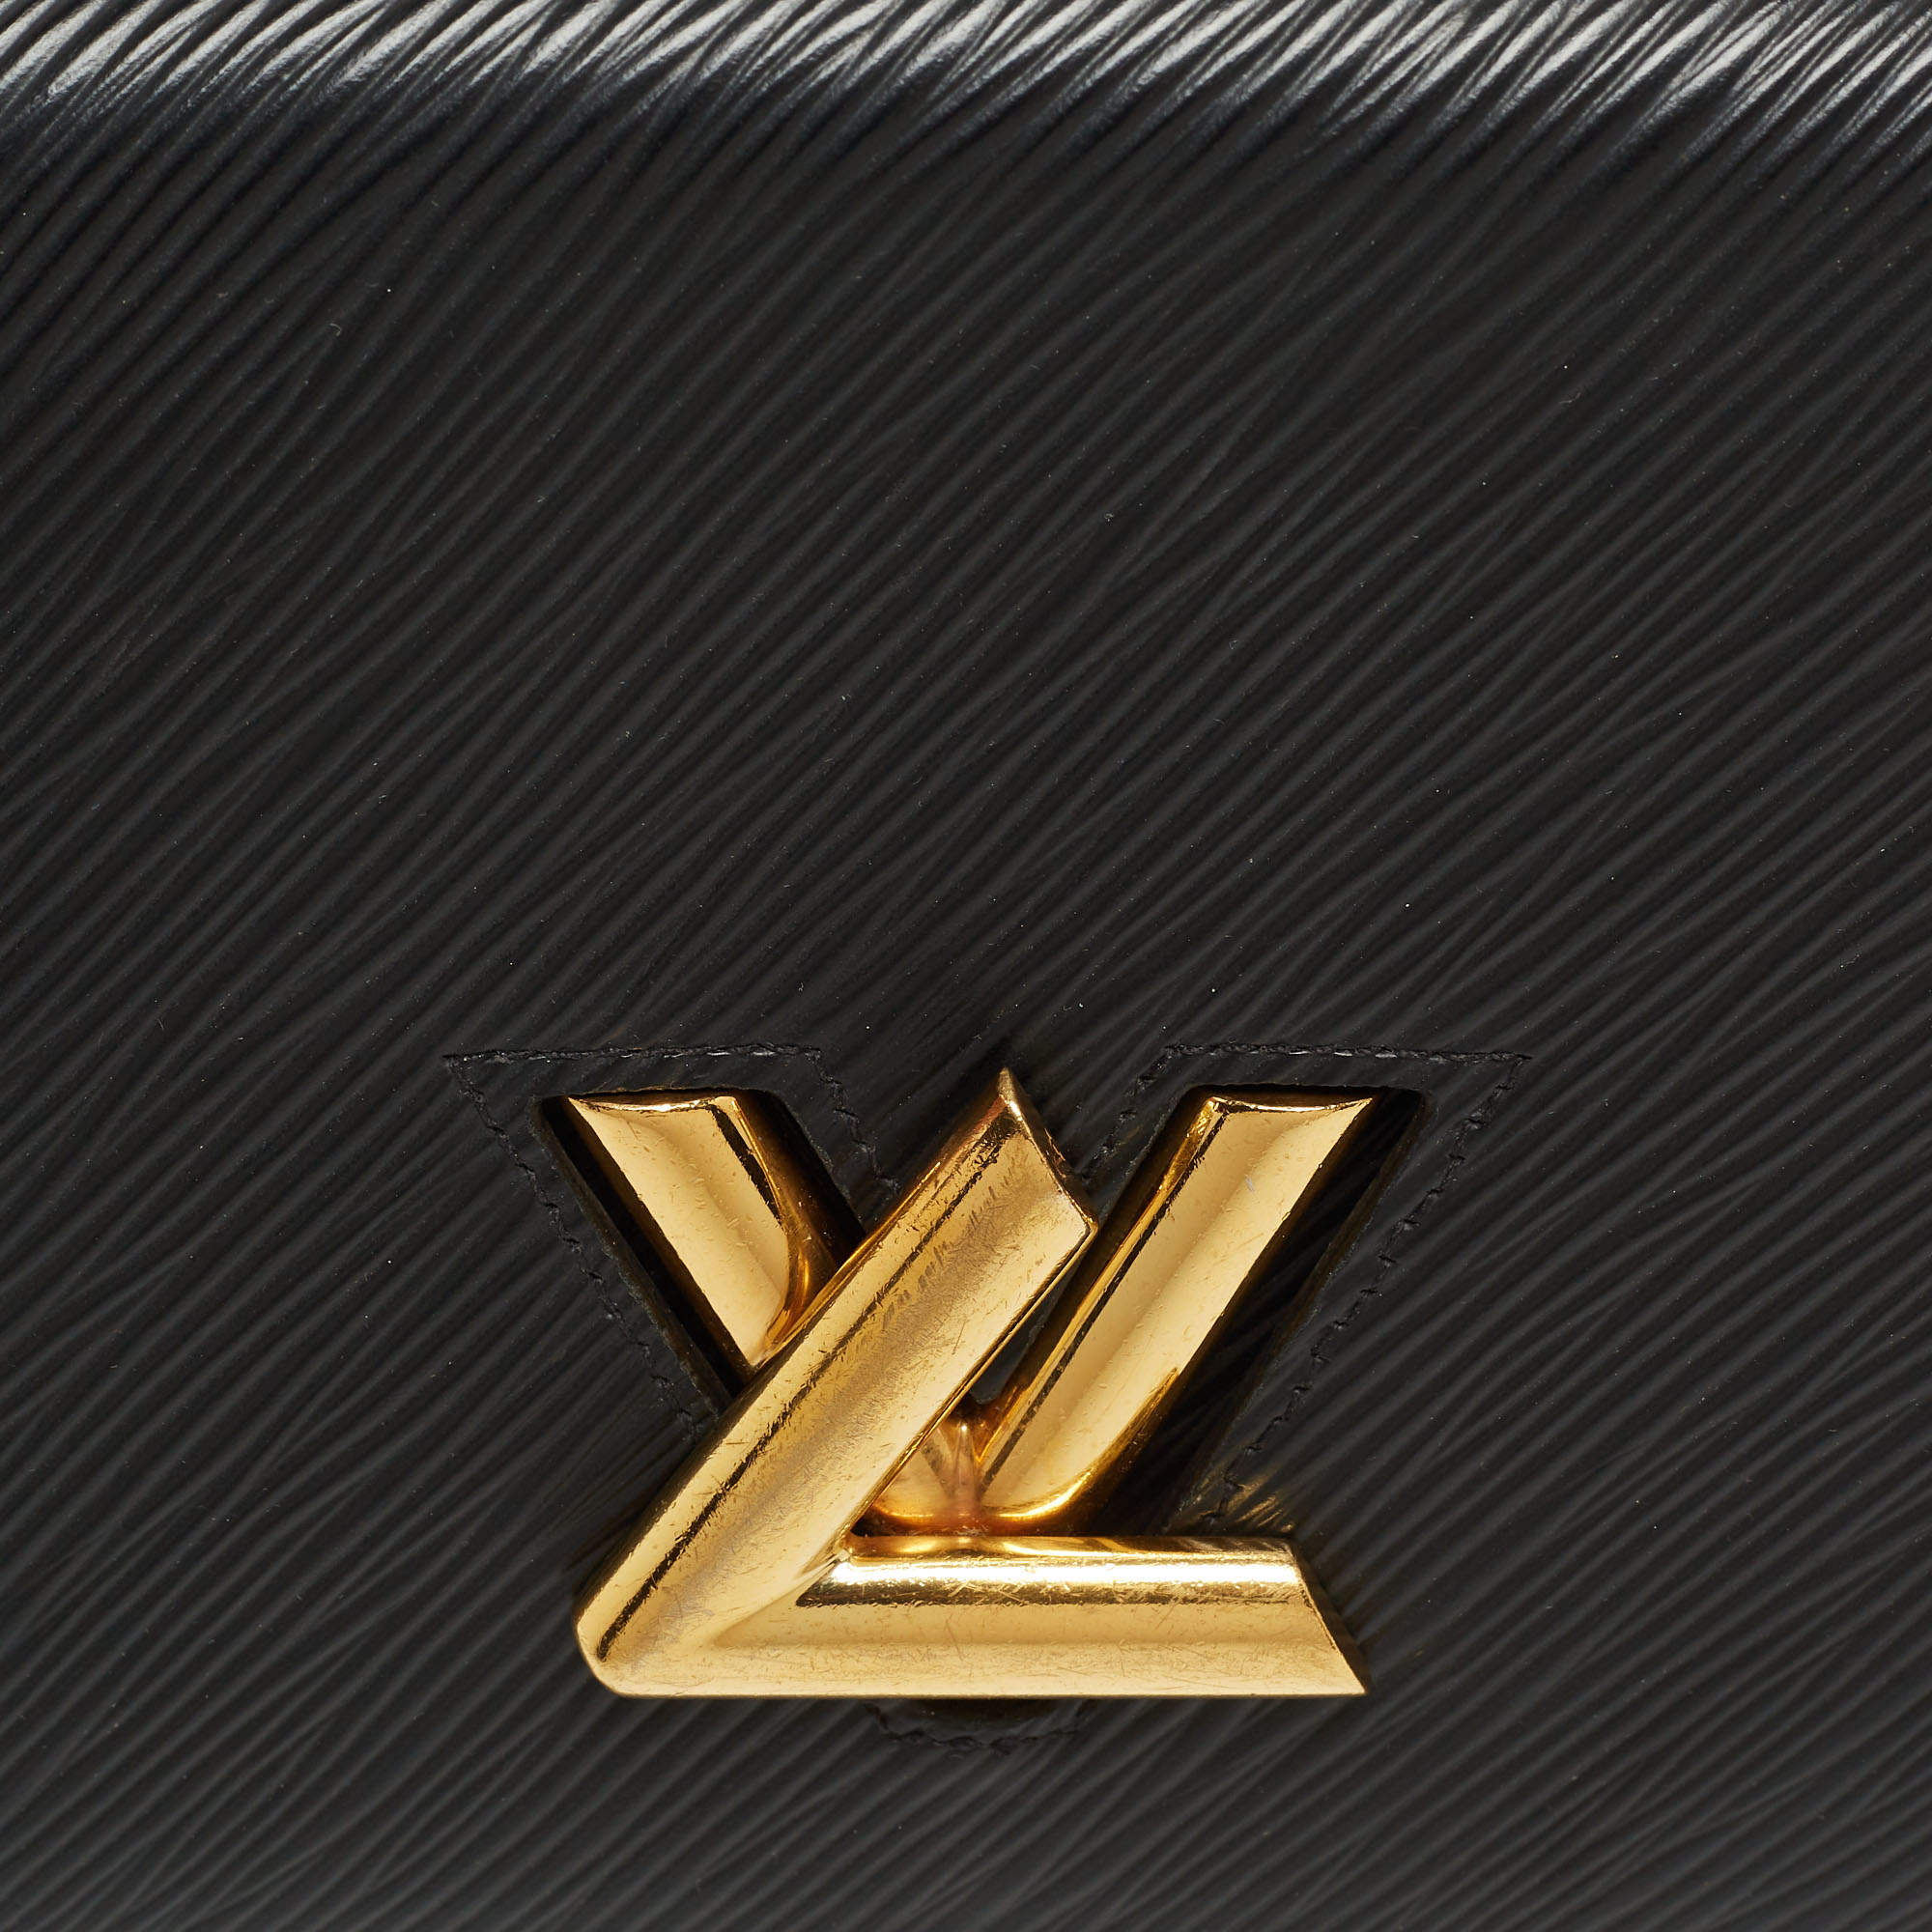 Louis Vuitton TWIST CHAIN WALLET